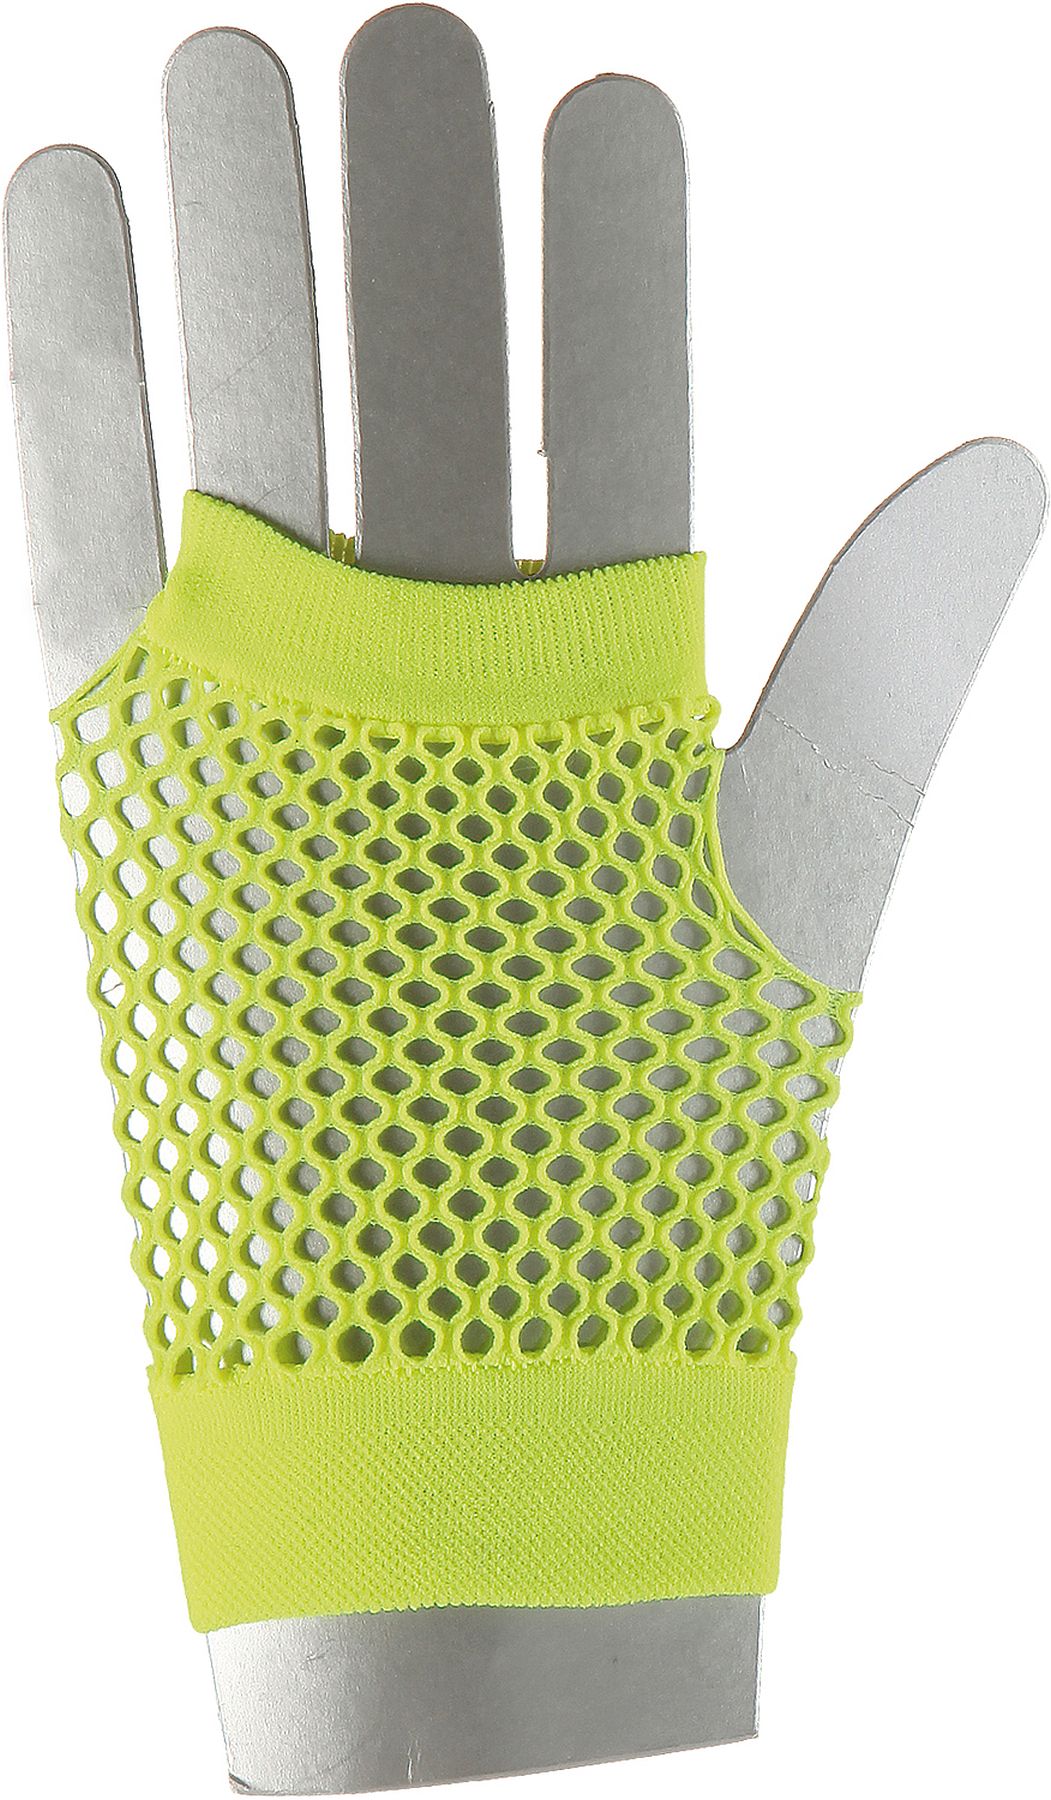 Mesh short gloves fingerless, neon-yellow